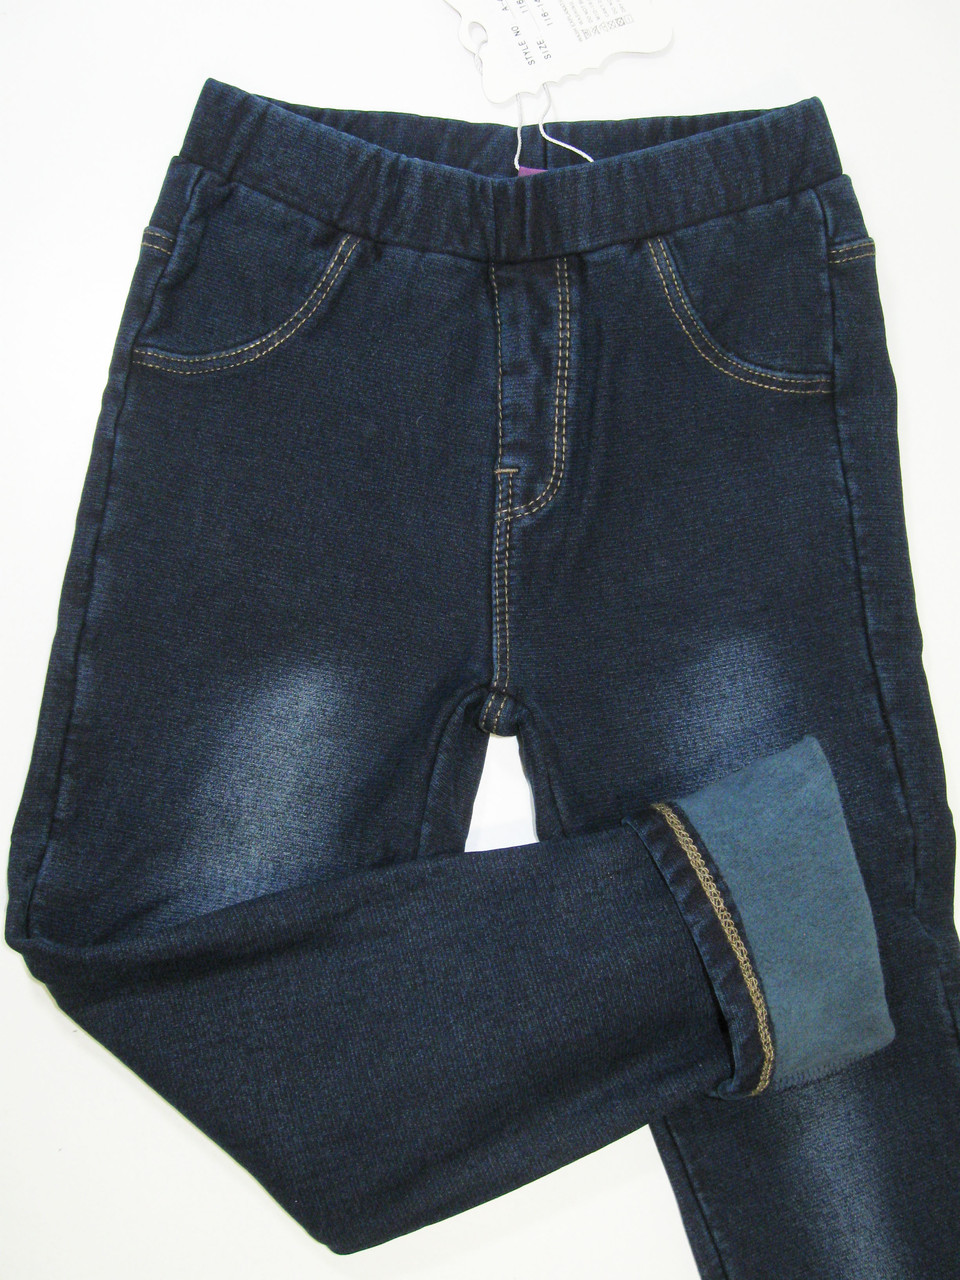 Утеплённые леггинсы джинсовые для девочек, размеры 122.128, арт А-47